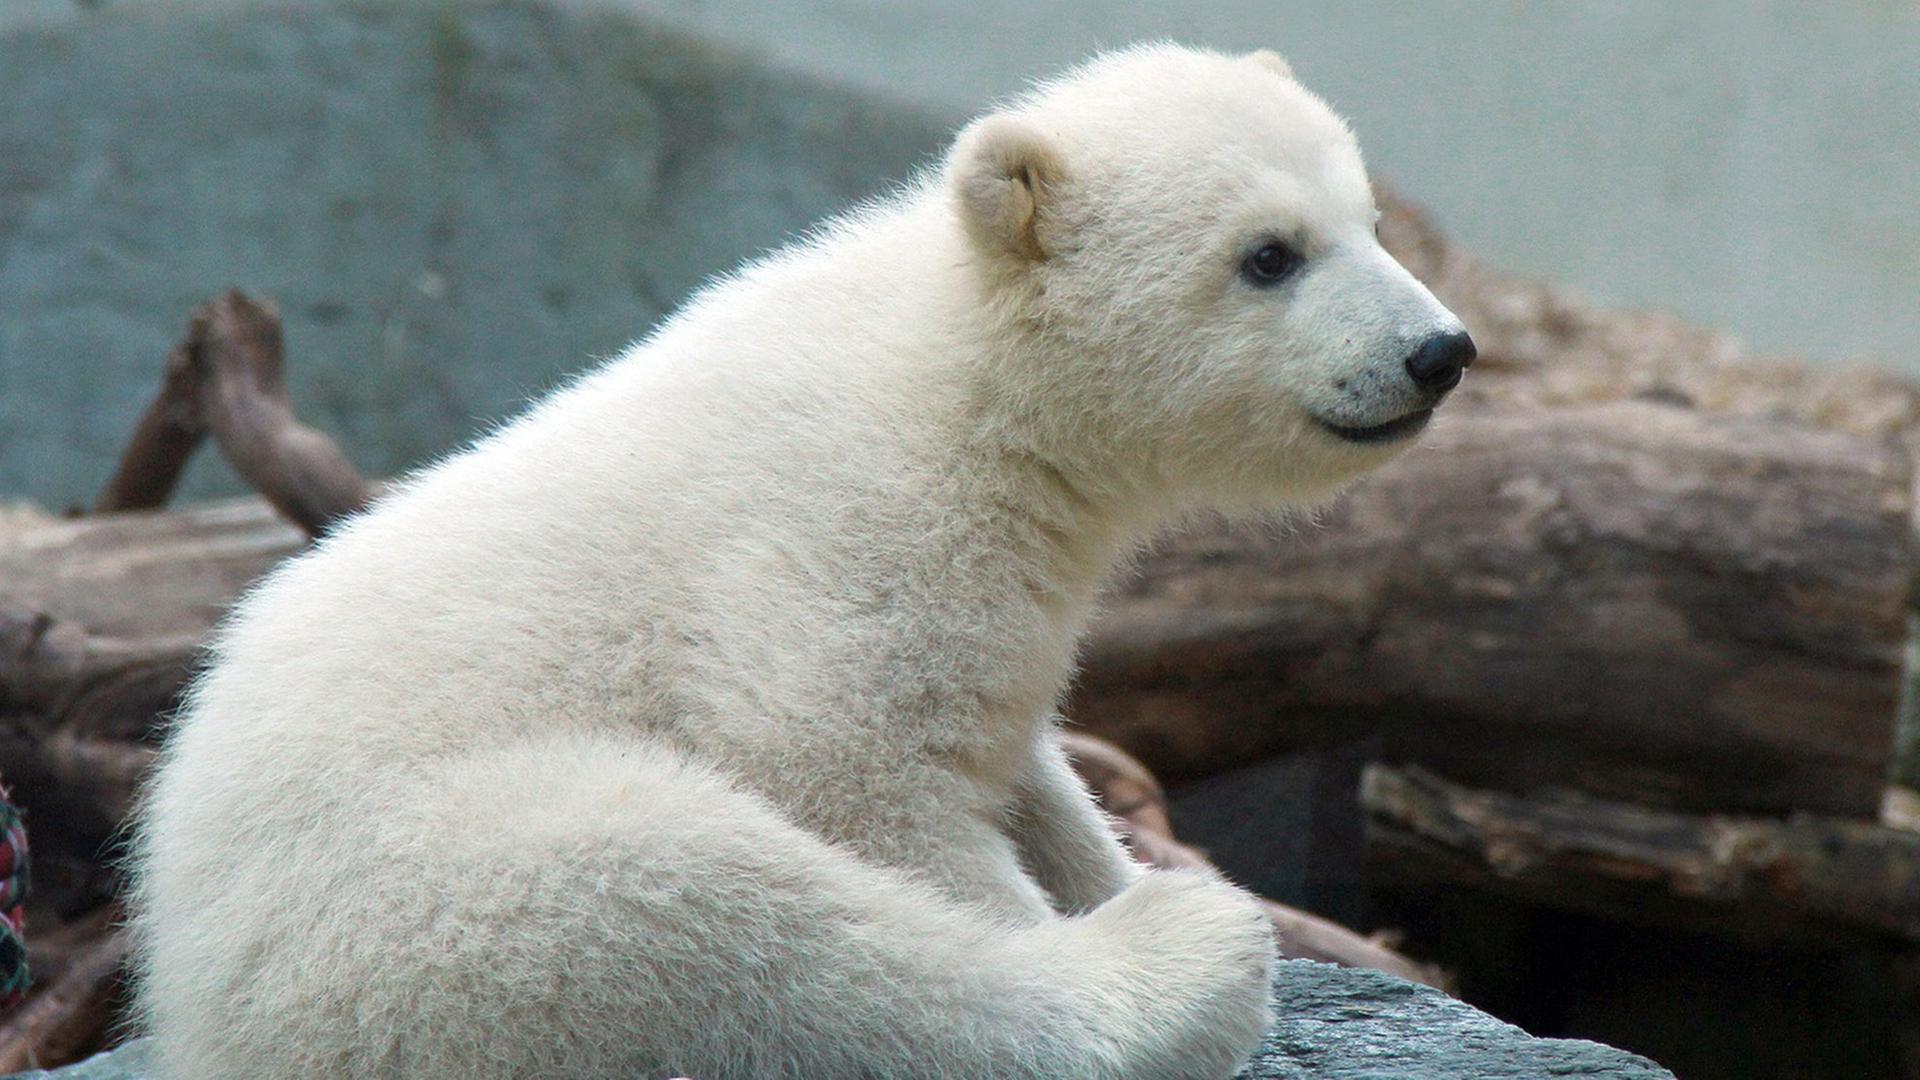 Eisbärbaby Anori wurde am 4.1.2012 im Wuppertaler Zoo geboren. Mutter ist die neunjährige Vilma, Vater ist der 18-jährige Lars, bekannt als Vater von Knut.